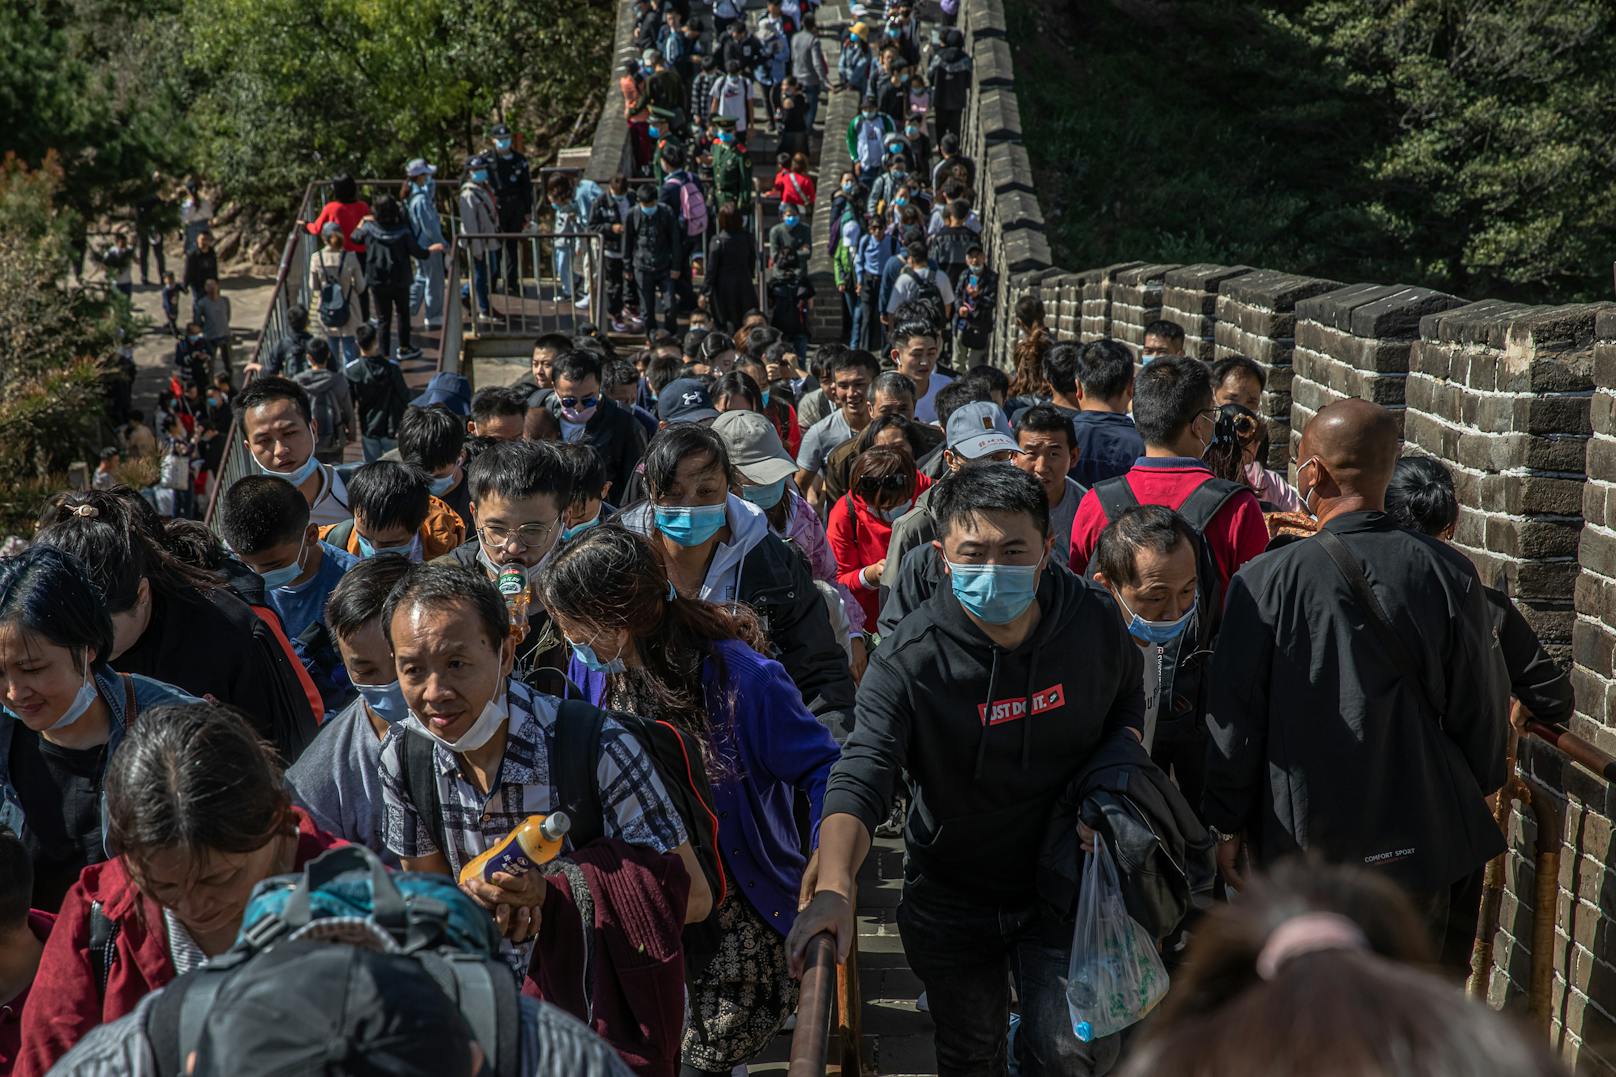 Millionen Touristen strömten auf die Chinesische Mauer, als gäbe es kein Corona.